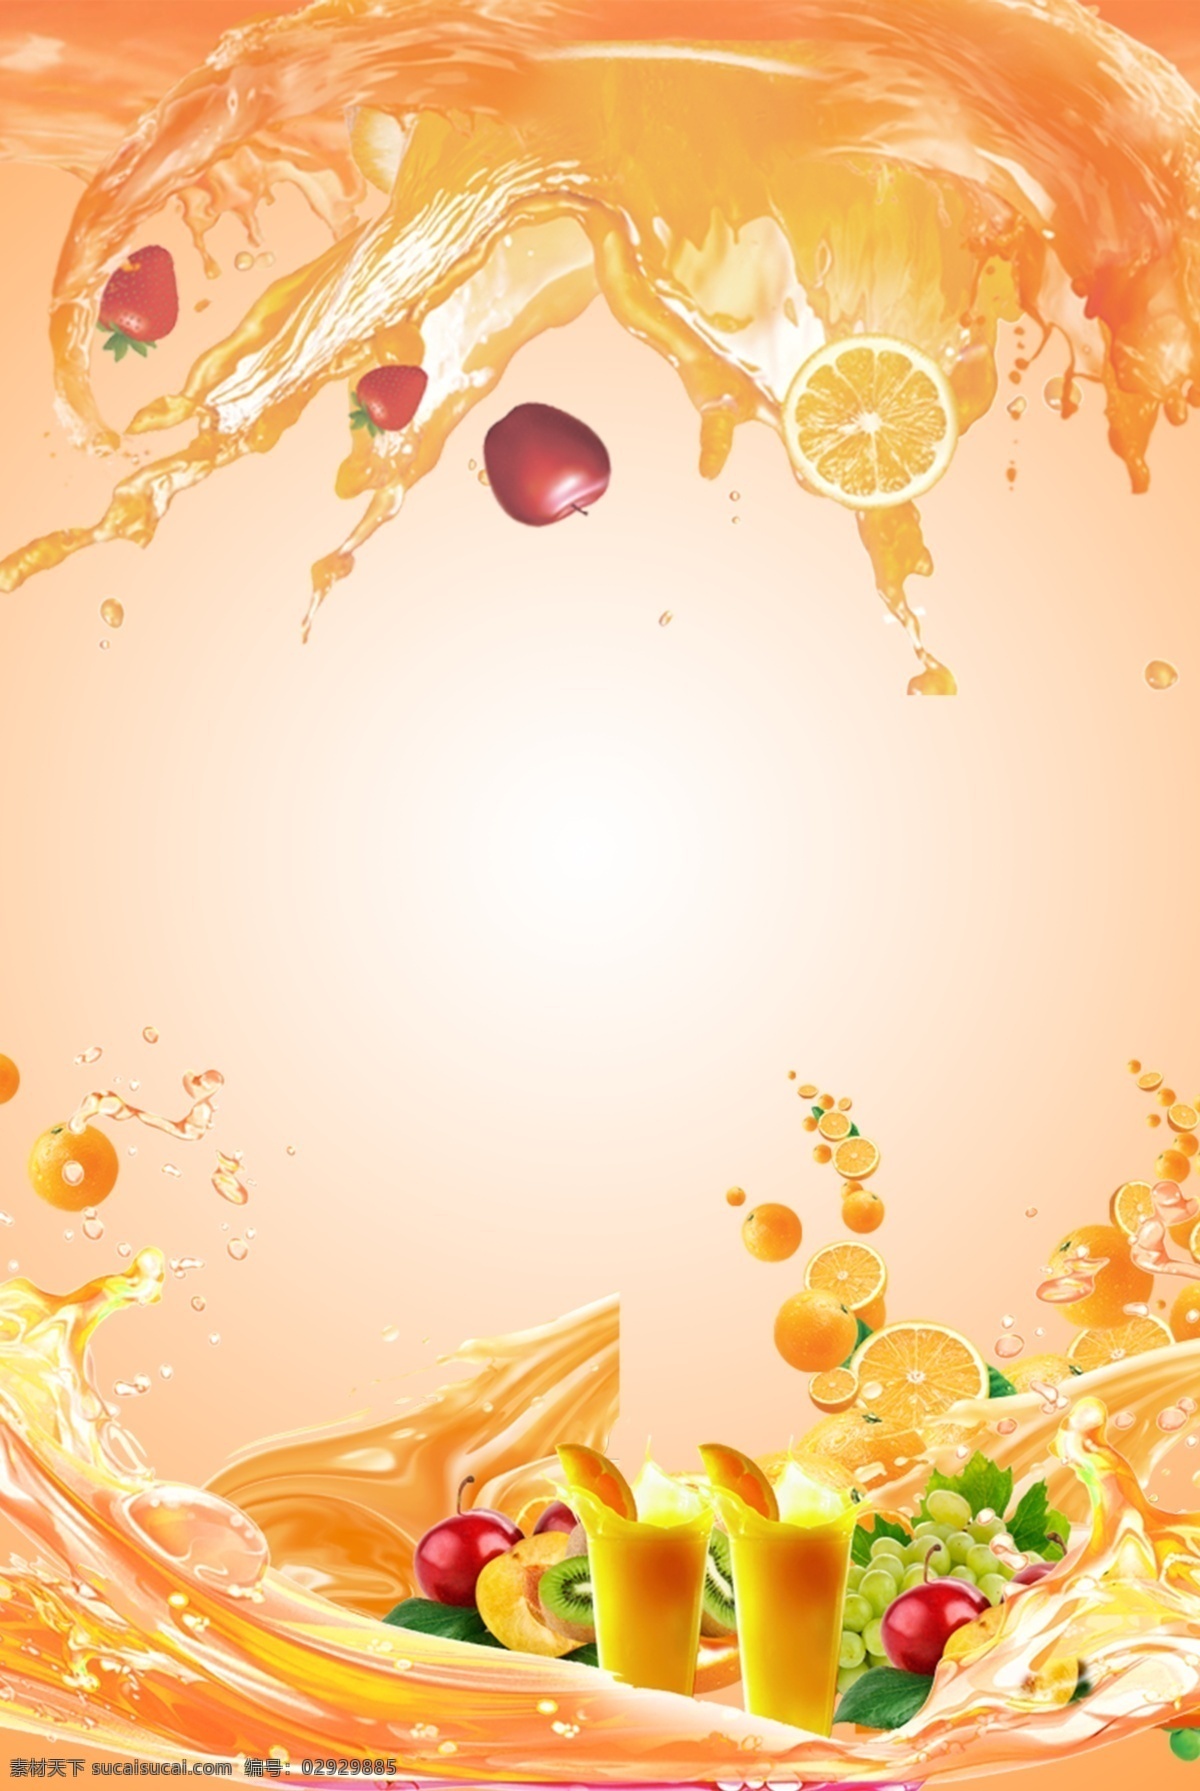 果汁 食品饮料 广告 背景 海报 创意 h5 水果 饮料 促销 清新